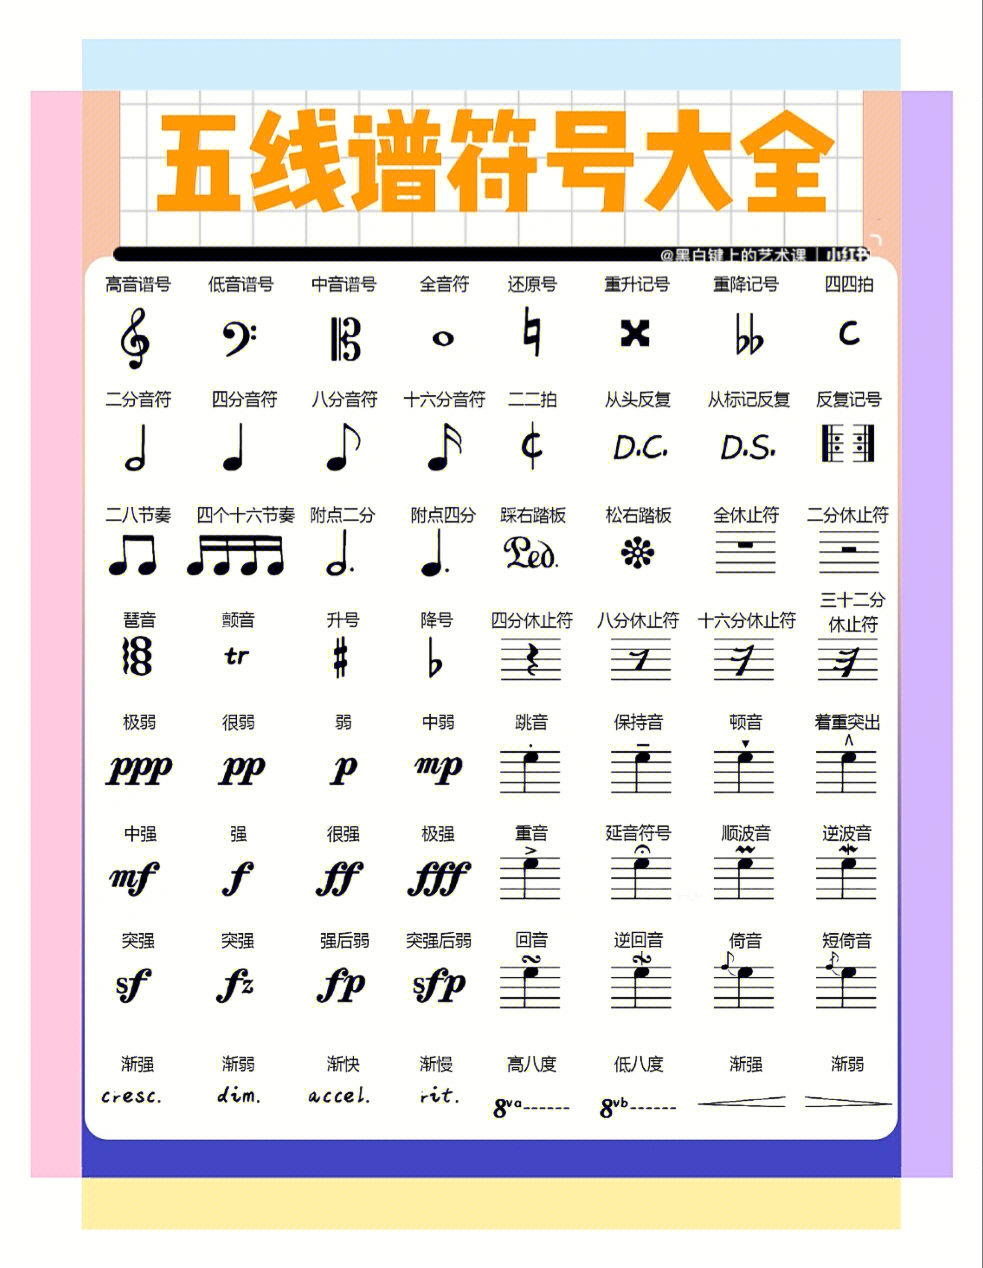 小提琴乐谱常见符号图片